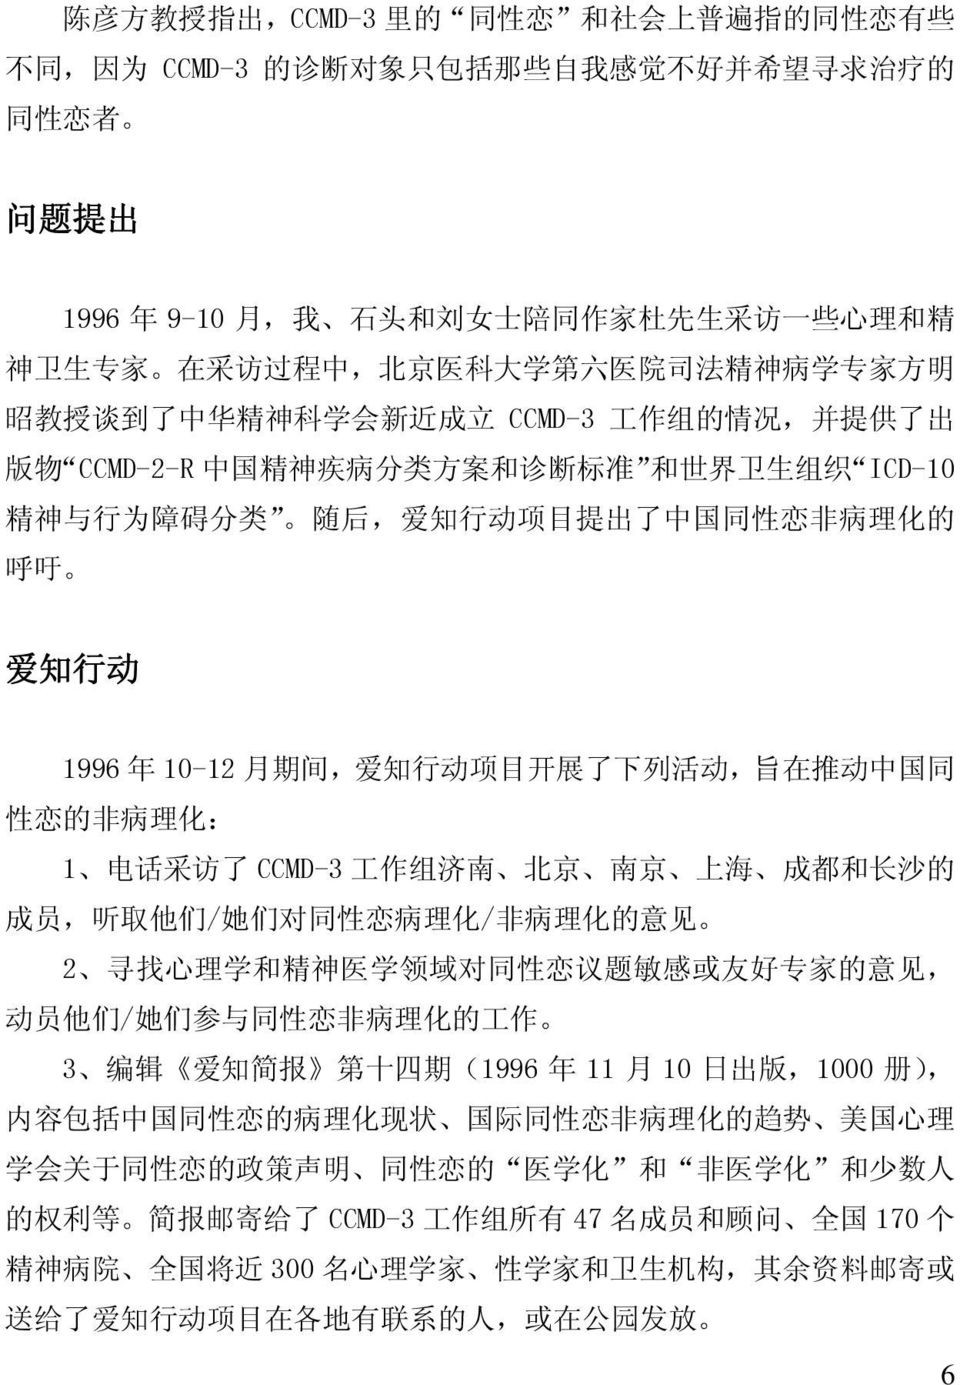 碍 分 类 随 后, 爱 知 行 动 项 目 提 出 了 中 国 同 性 恋 非 病 理 化 的 呼 吁 爱 知 行 动 1996 年 10-12 月 期 间, 爱 知 行 动 项 目 开 展 了 下 列 活 动, 旨 在 推 动 中 国 同 性 恋 的 非 病 理 化 : 1 电 话 采 访 了 CCMD-3 工 作 组 济 南 北 京 南 京 上 海 成 都 和 长 沙 的 成 员, 听 取